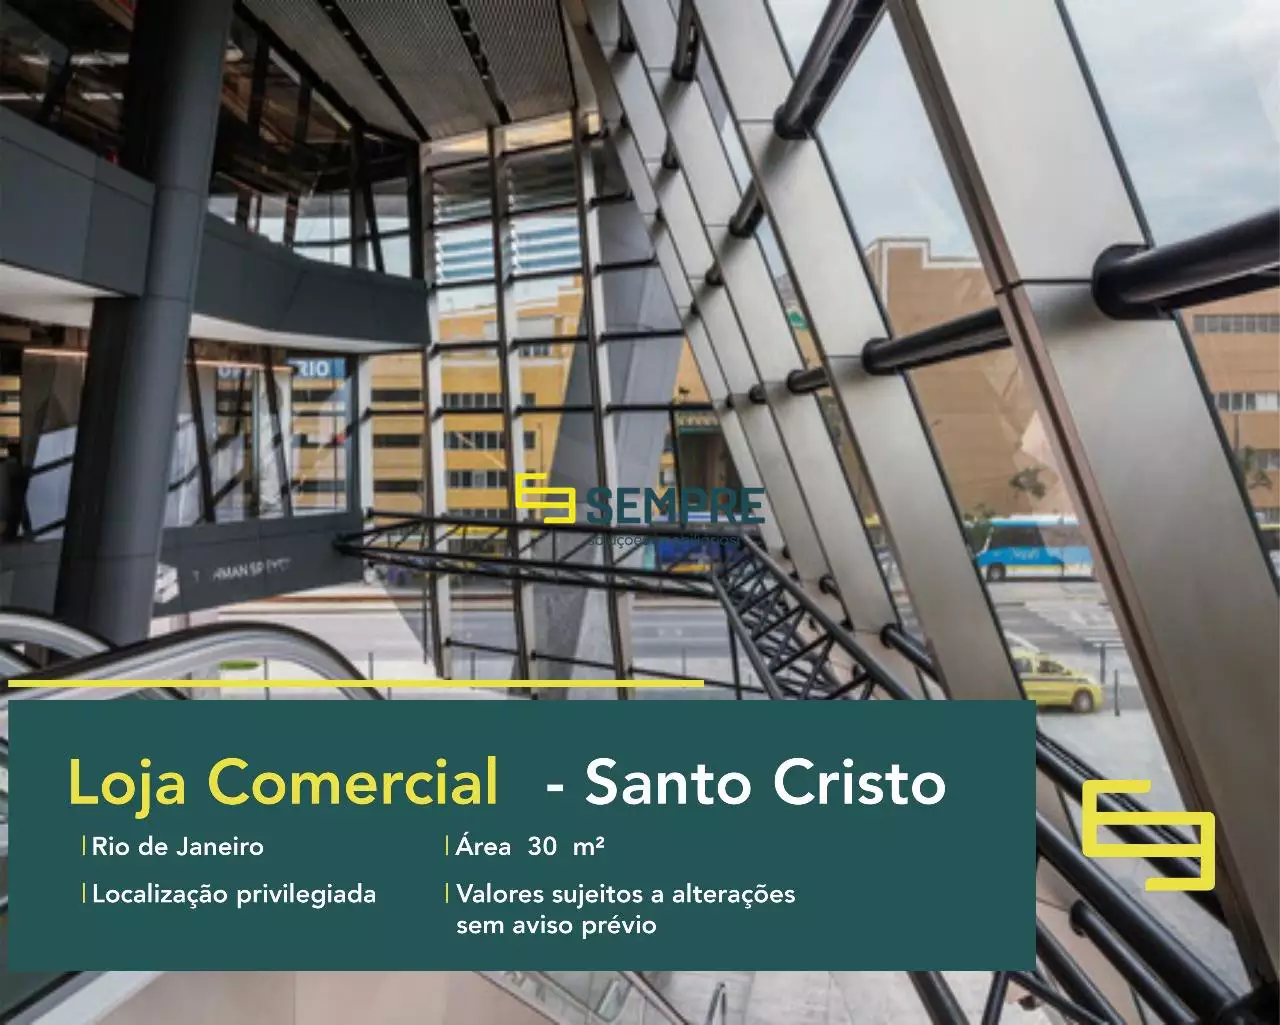 Locação de loja no AQWA Corporate - Rio de Janeiro, excelente localização. O estabelecimento comercial conta com área de 30 m².